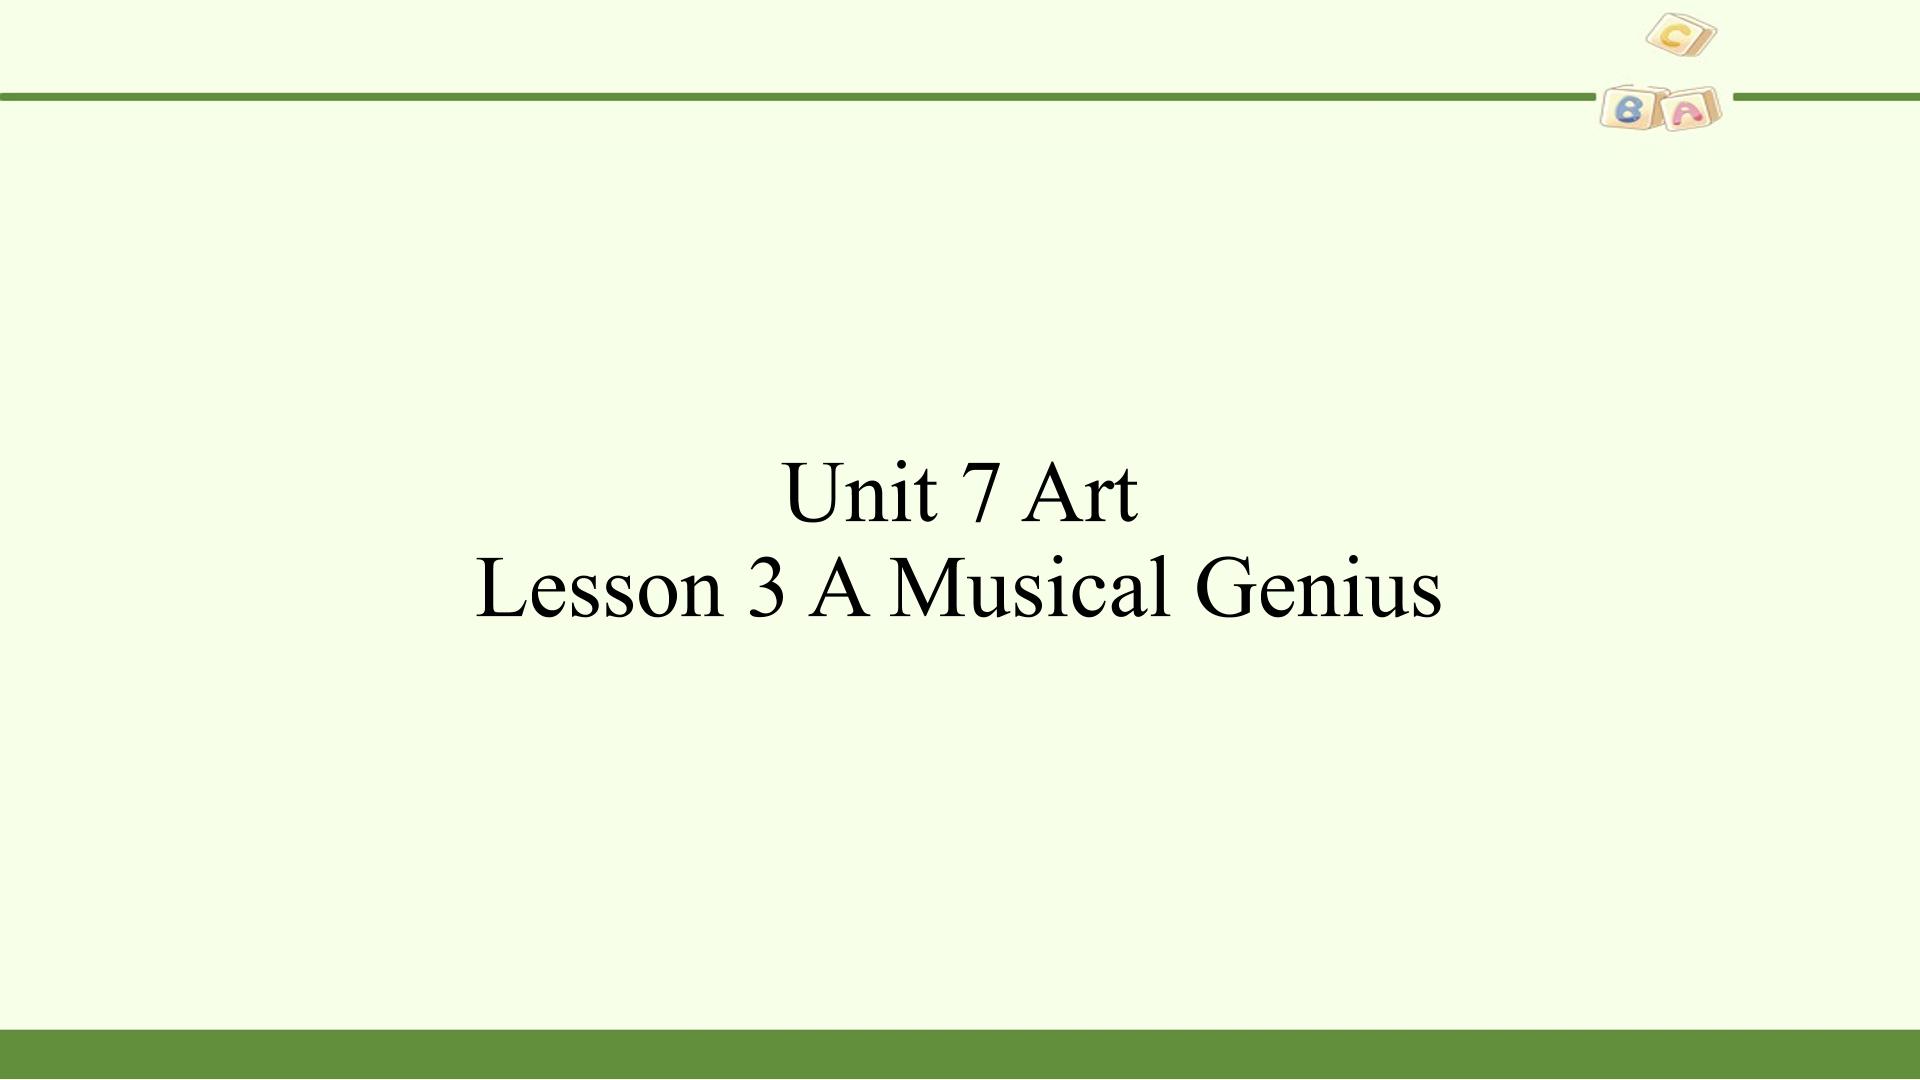 Lesson 3 A Musical Genius